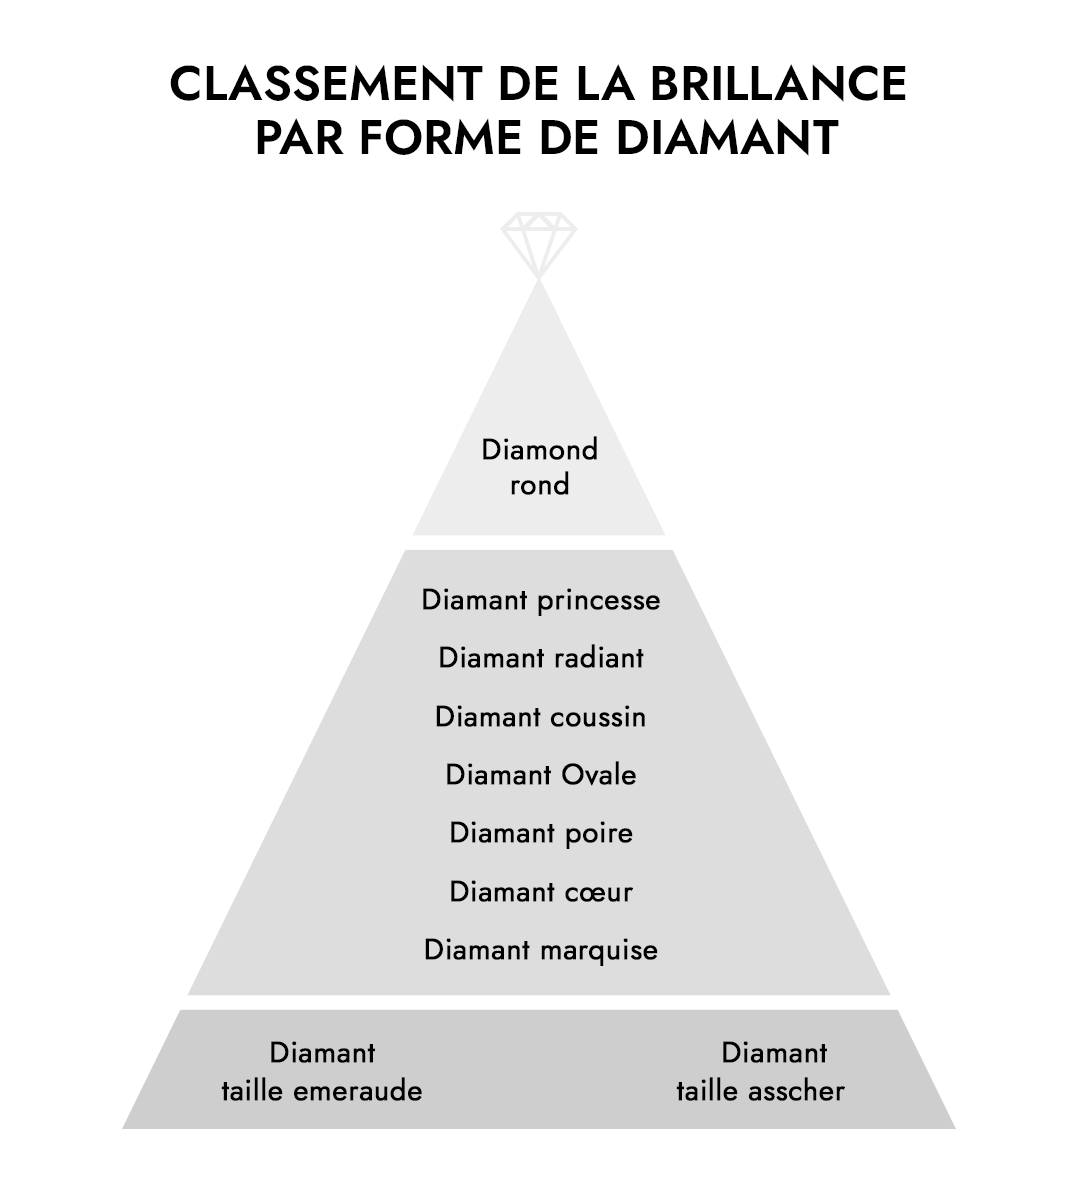 Classement de la brillance du diamant par forme de diamant